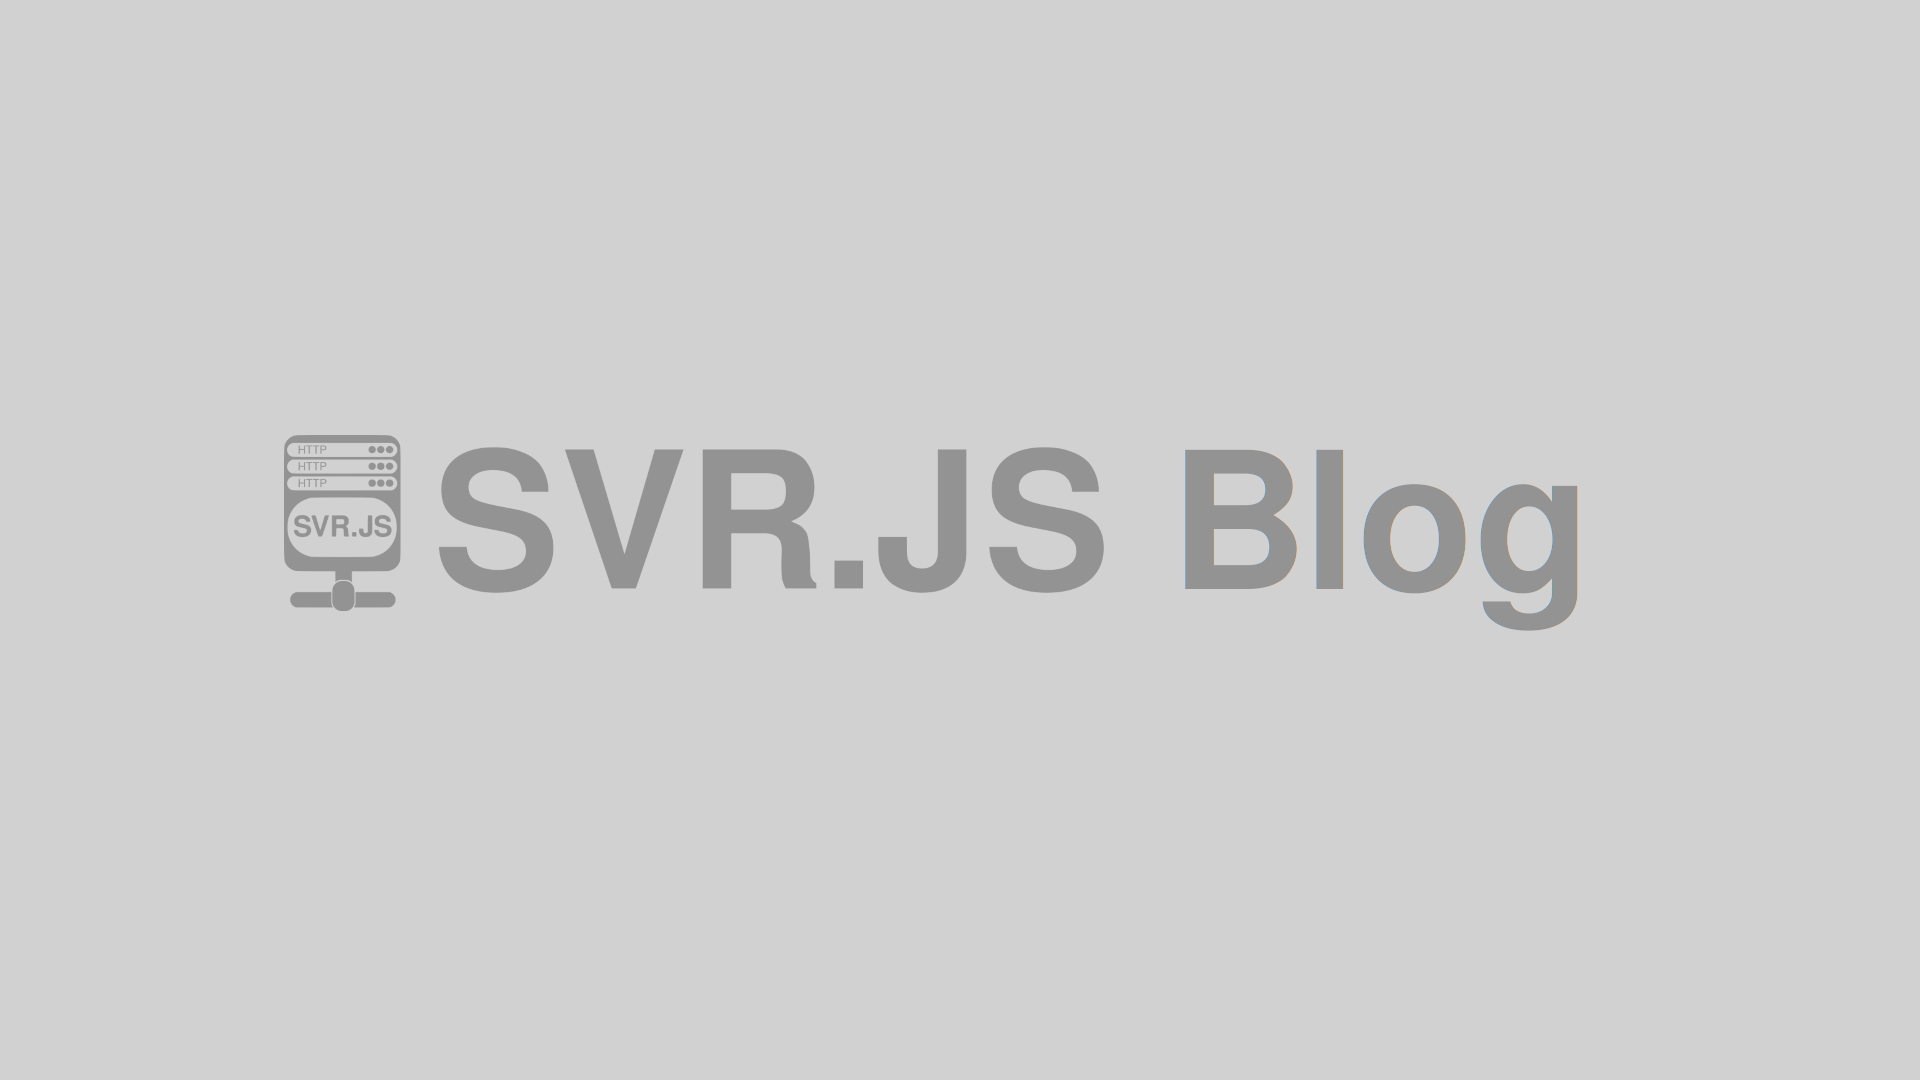 SVR.JS Forum announced